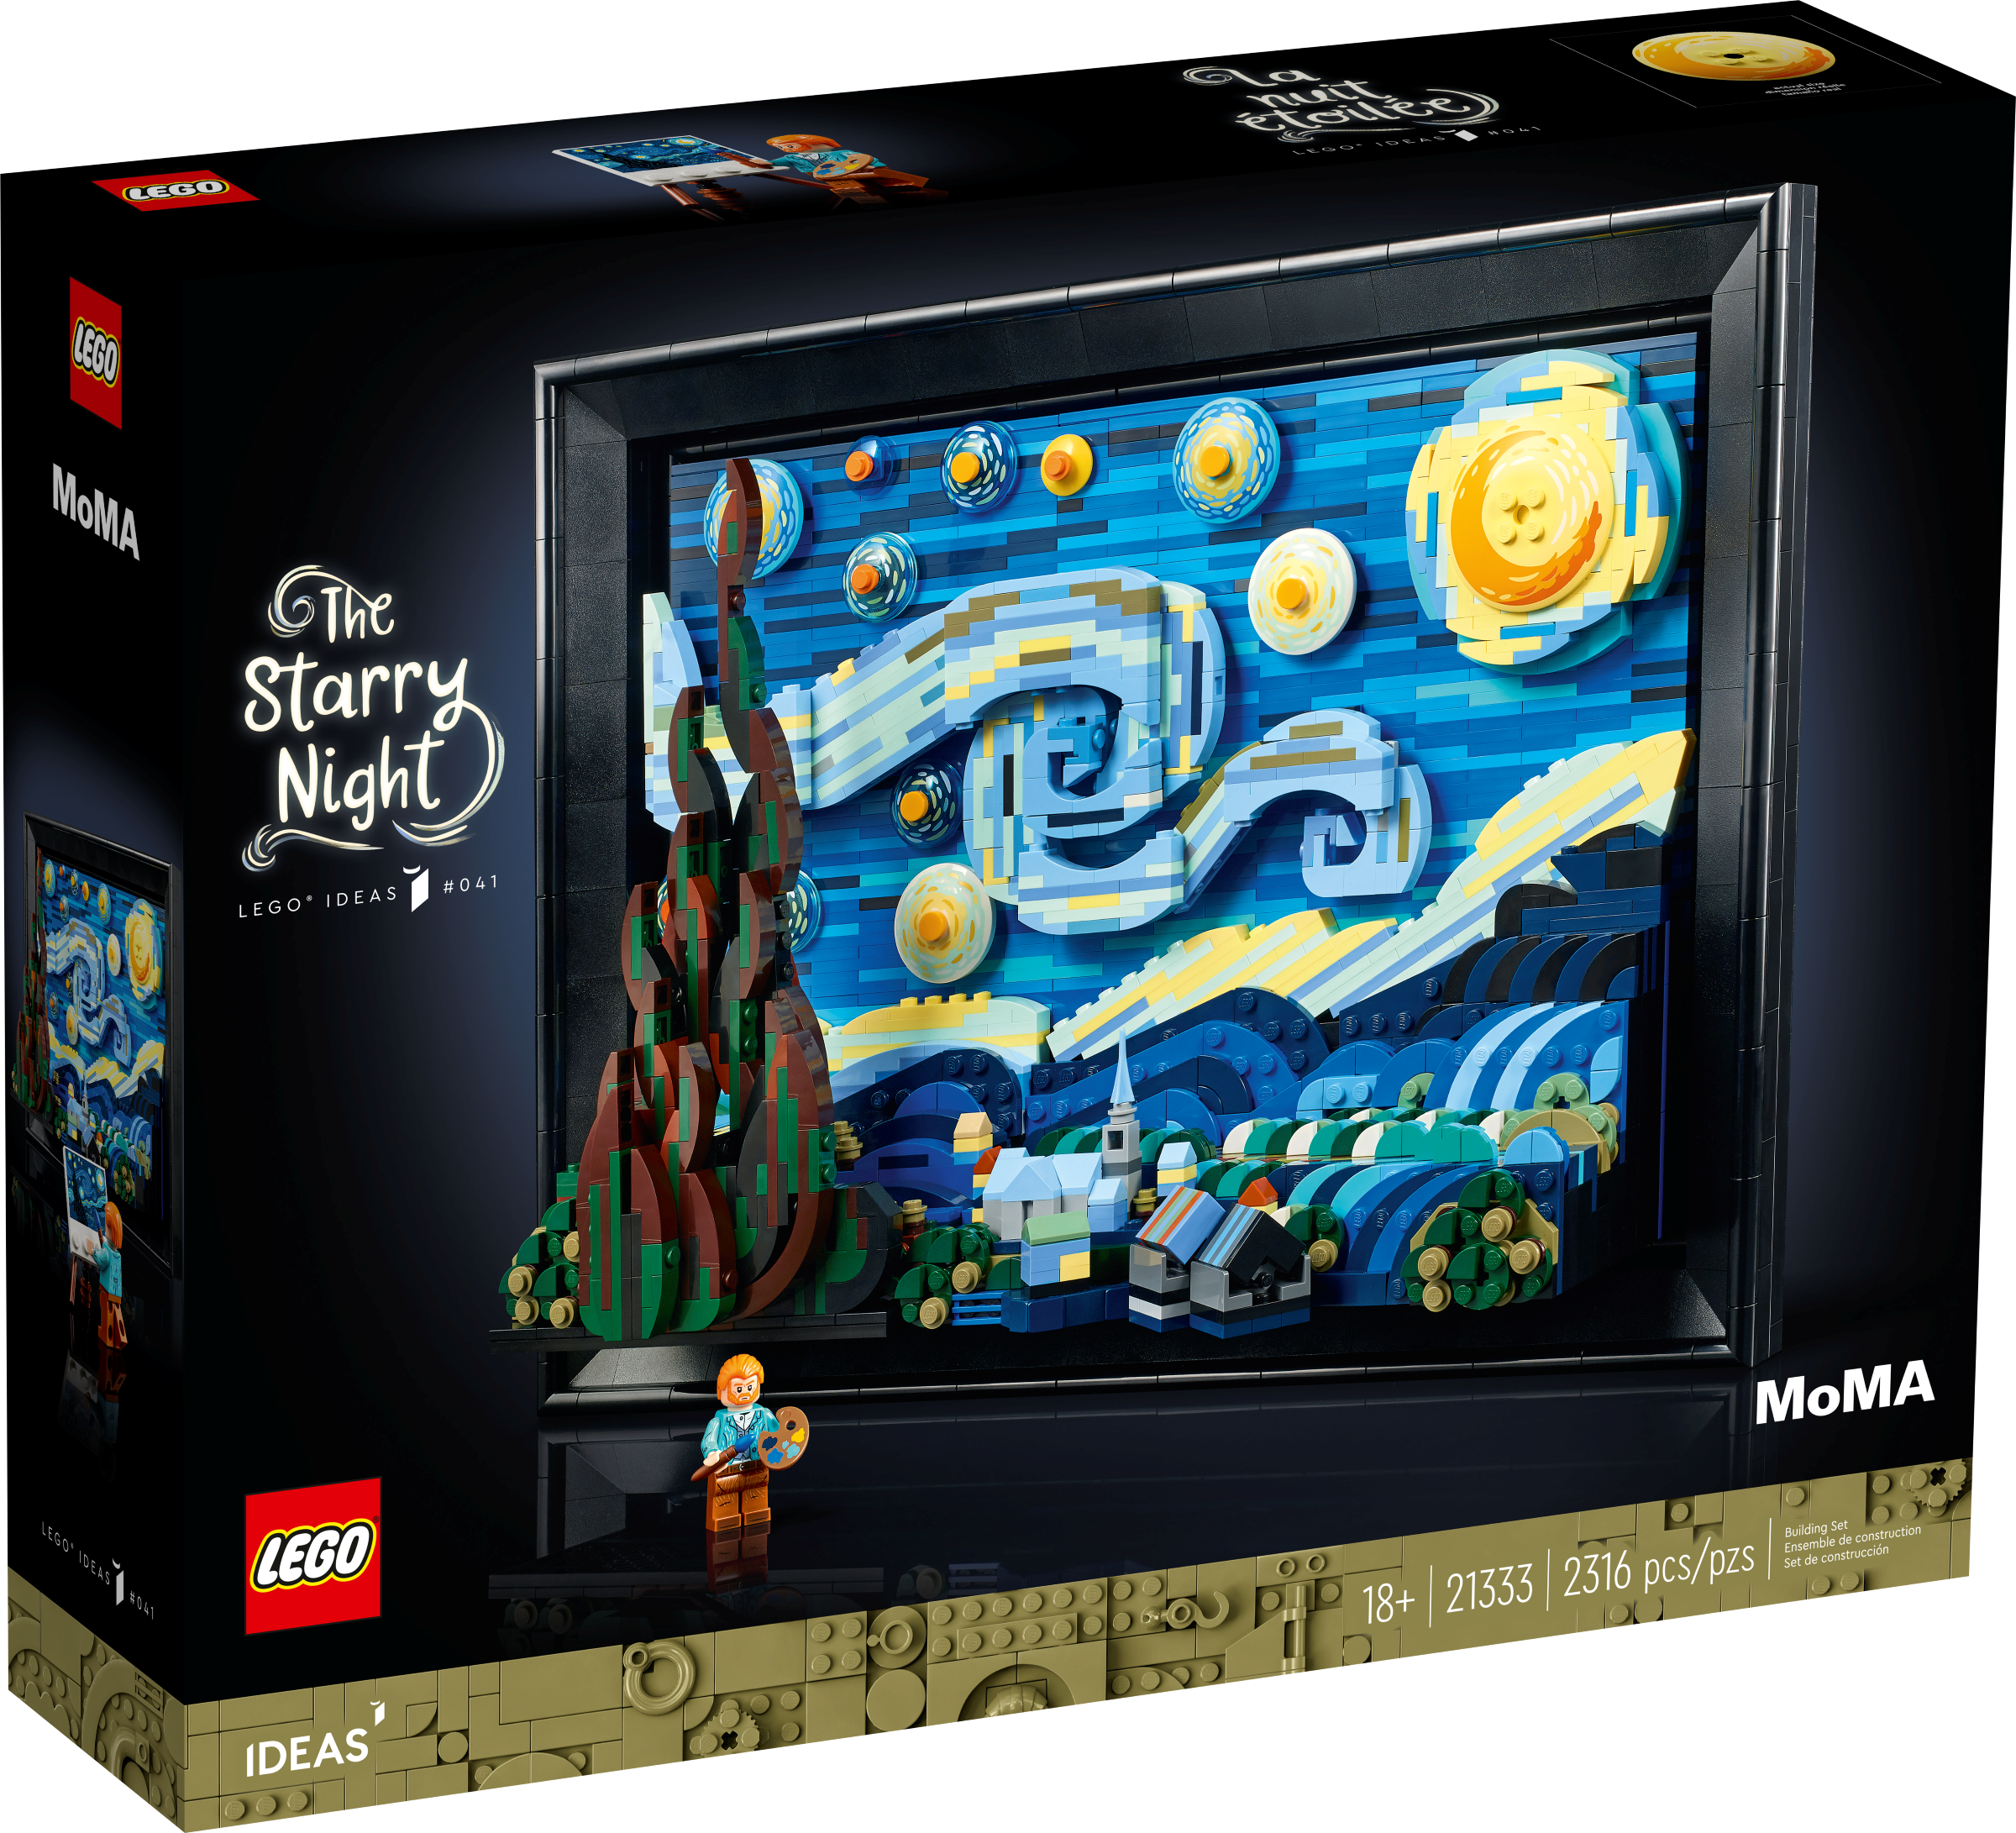 21333 ゴッホ 「星月夜」レゴ LEGO MoMA アート アイデア-